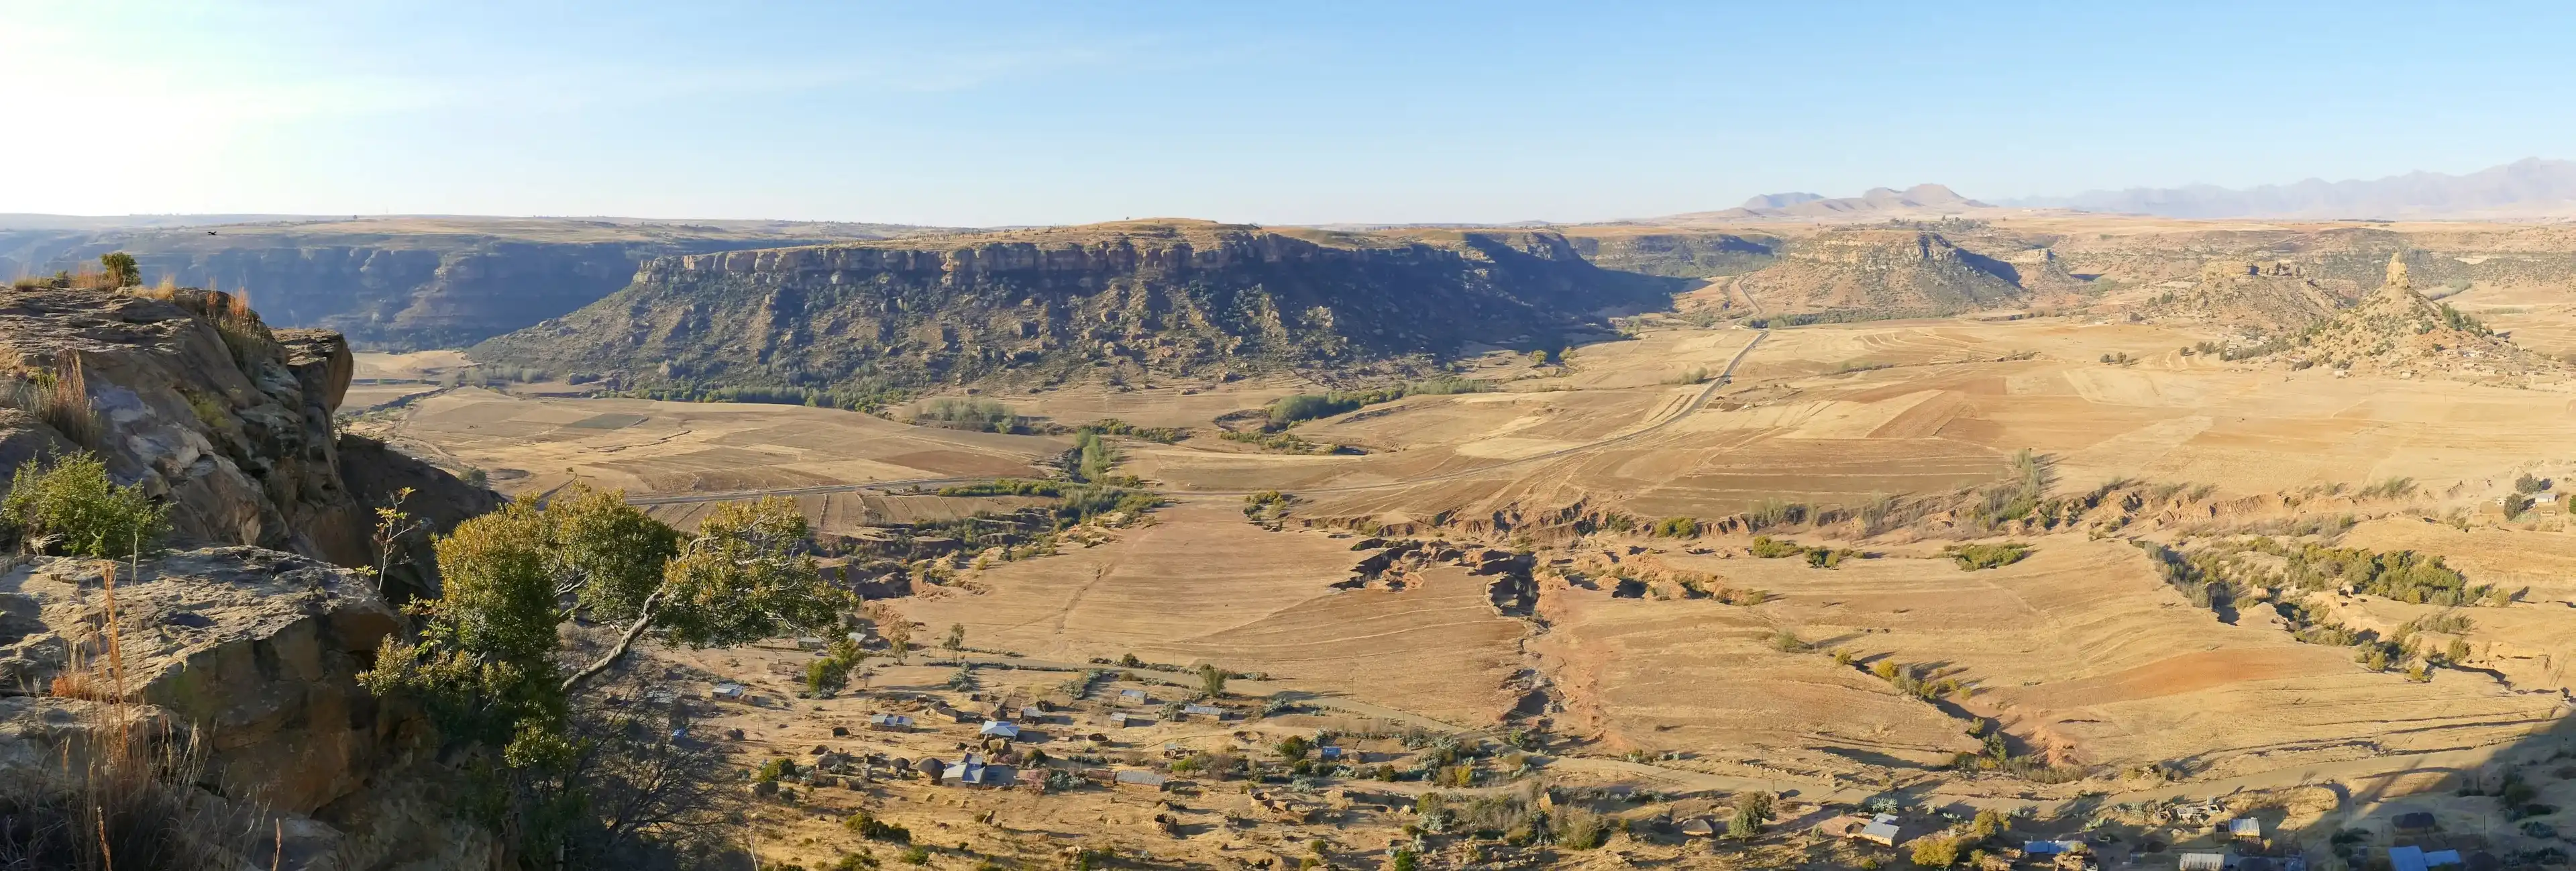 The landscape of Lesotho - Maseru